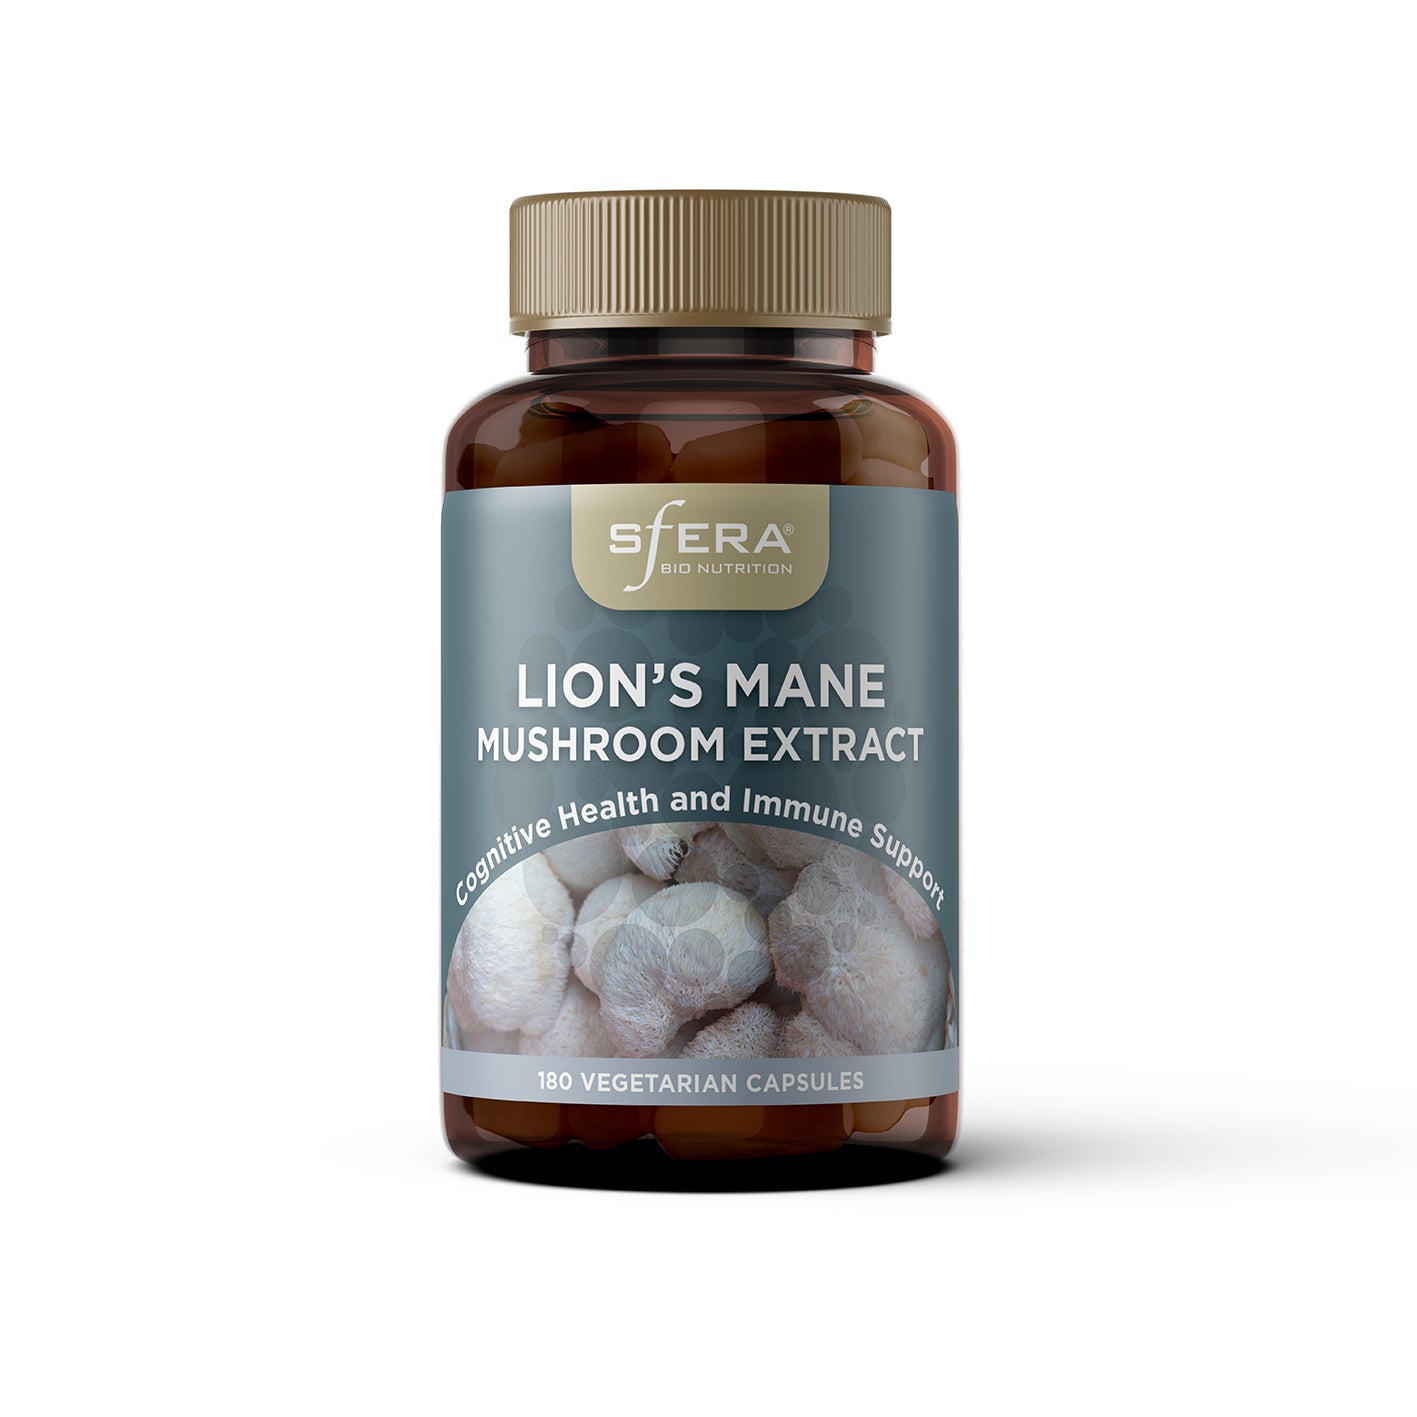 Sfera Lions Mane Mushroom Extract - 180 Capsules